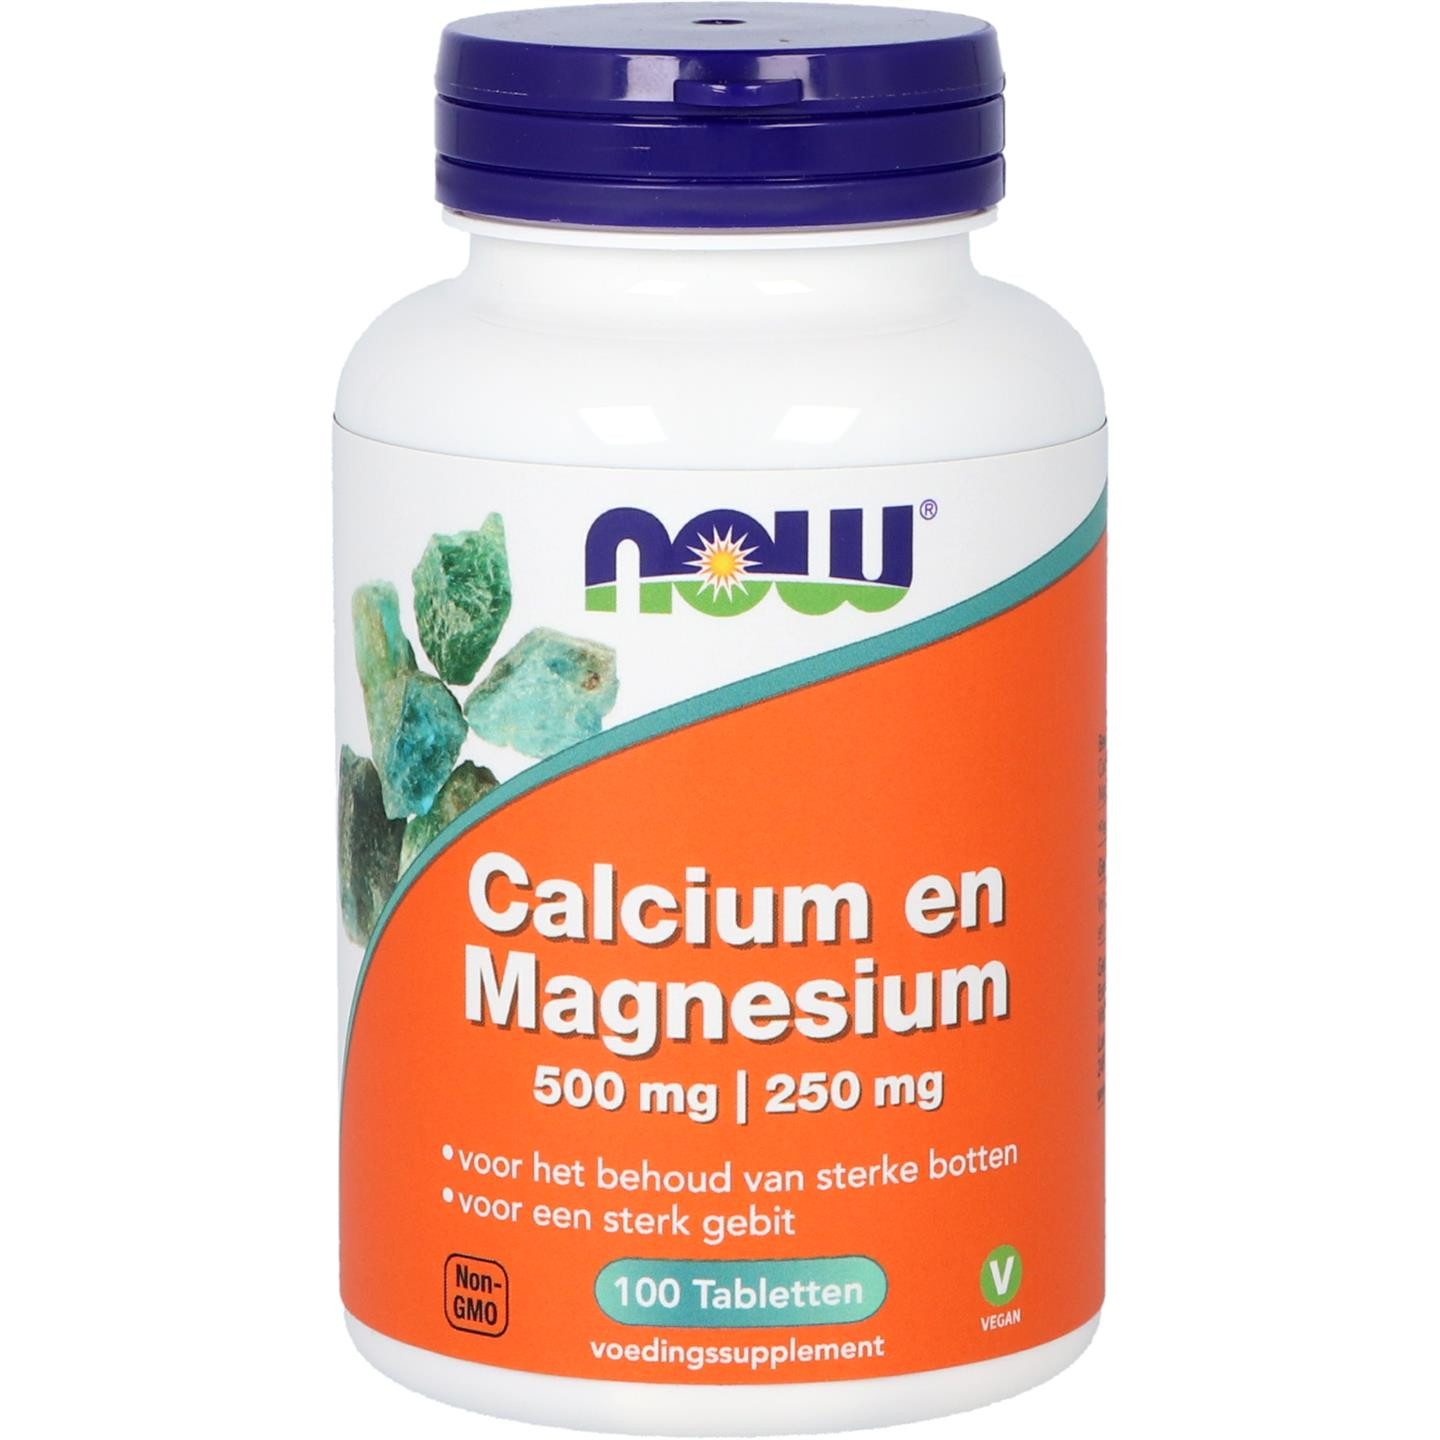 Calcium en Magnesium